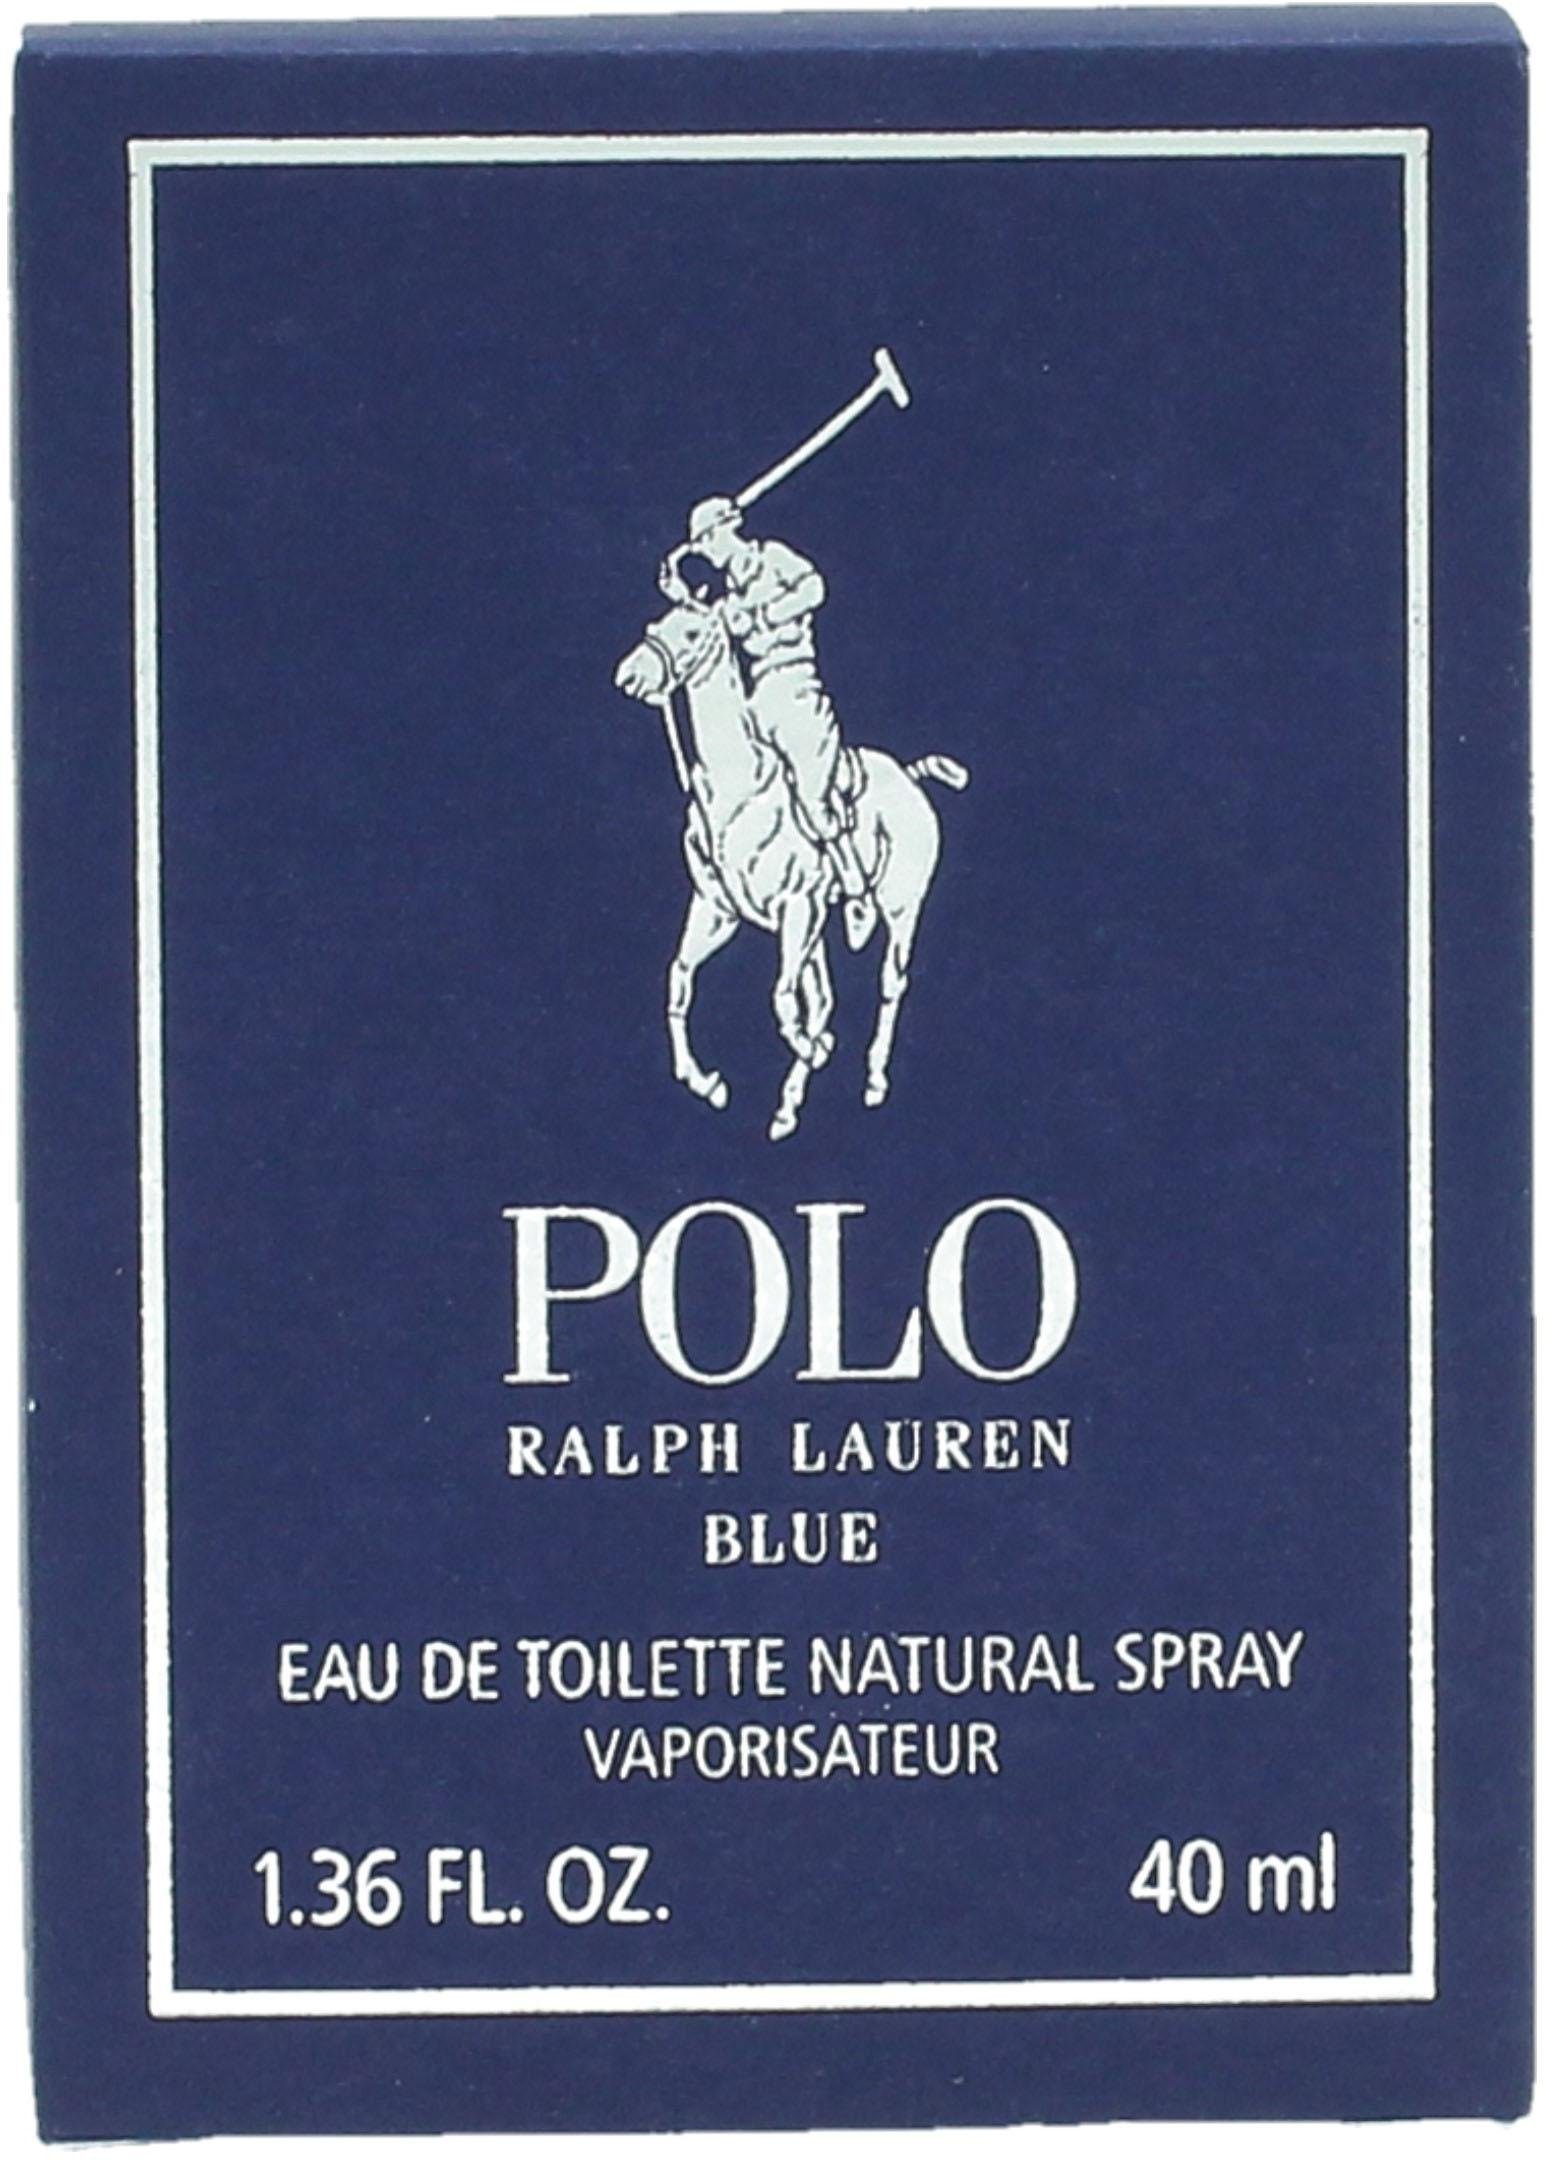 Toilette Eau Polo de Lauren Ralph Blue